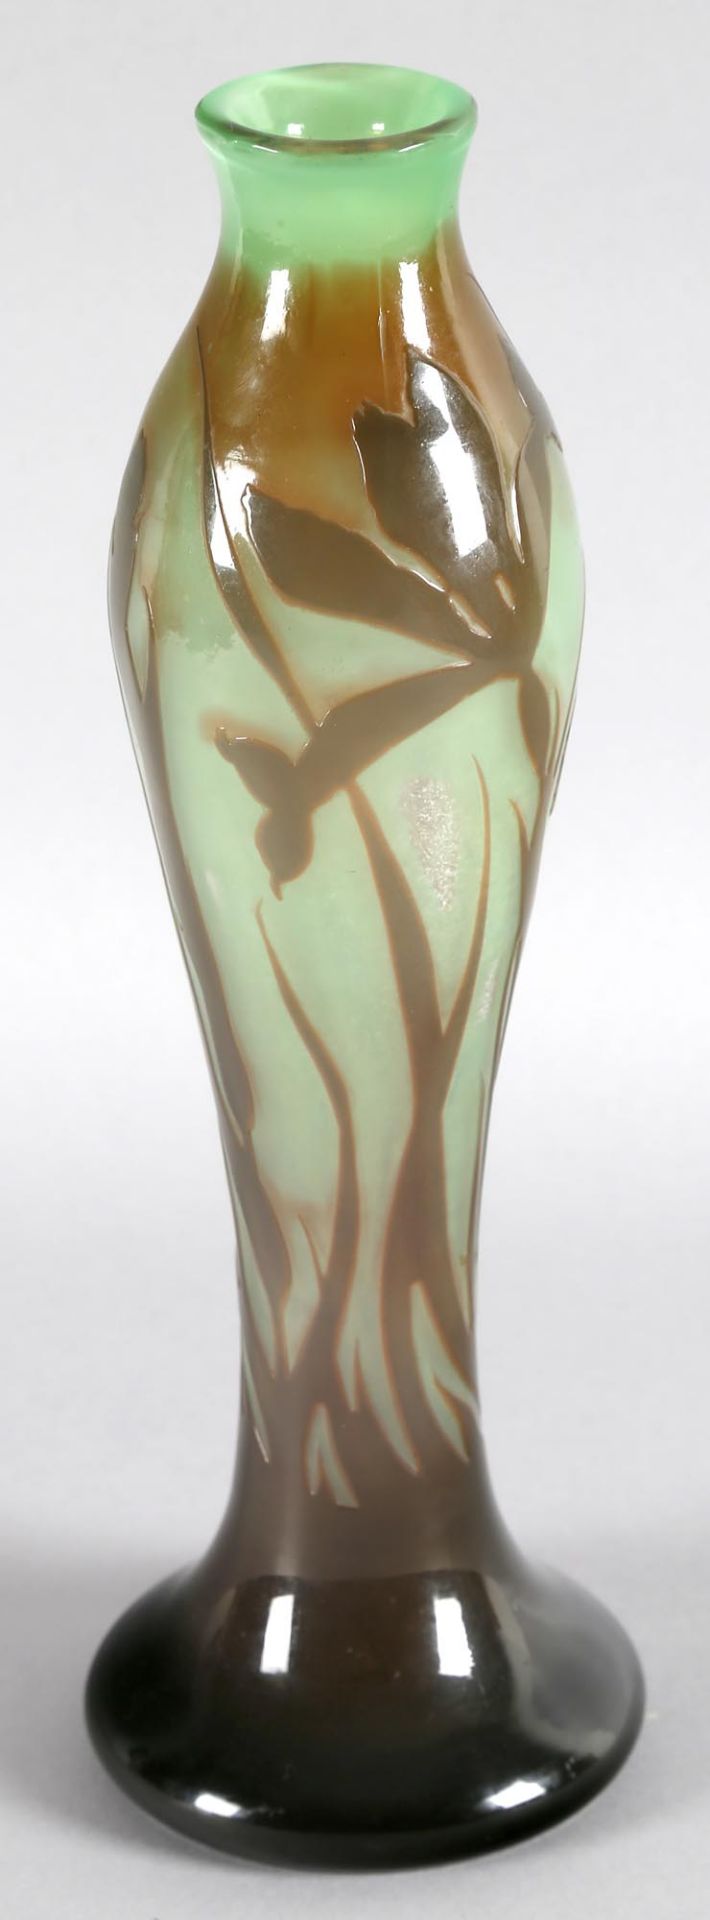 Jugendstil Vase, um 1900schlanke Form, sich zum ausgestellten gewölbten Rundstand verjüngende - Image 2 of 2